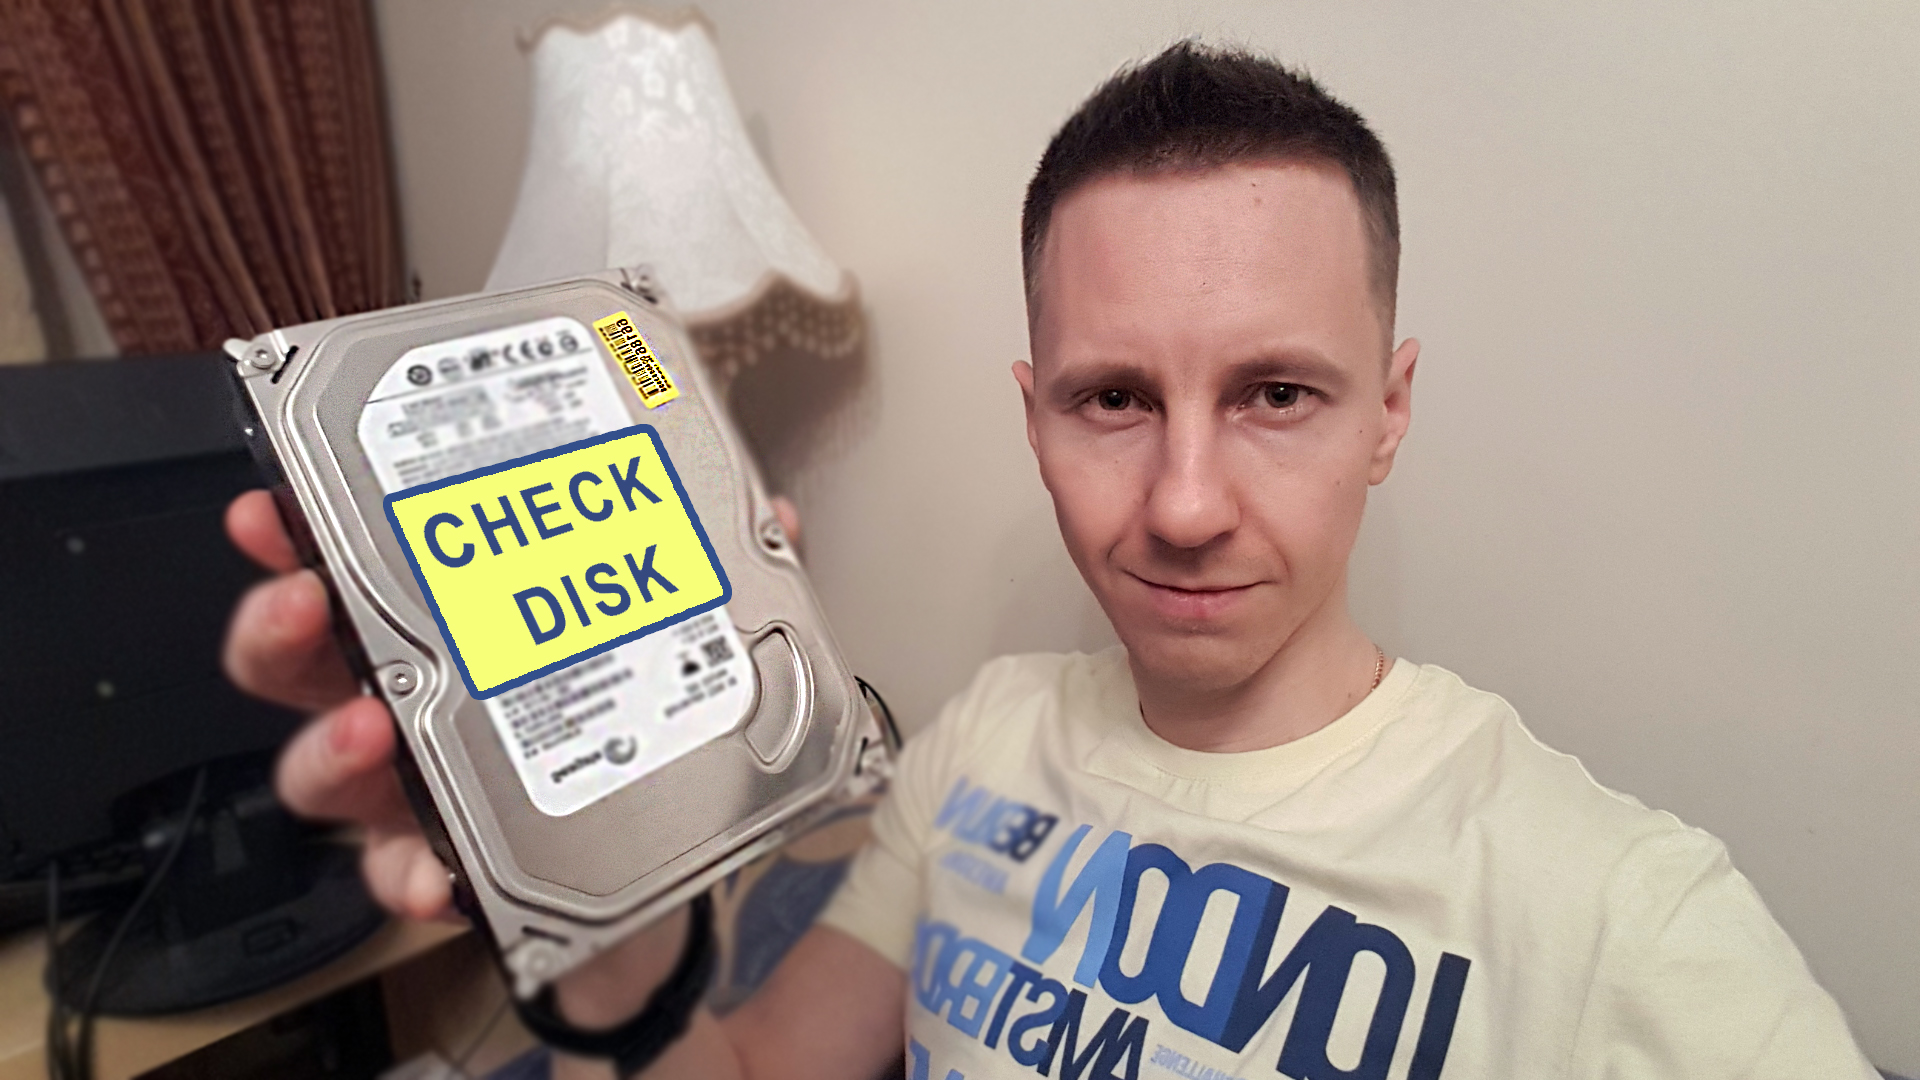 Автор Владимир Белев держит жесткий диск в руках с надписью CHECK DISK на нем.